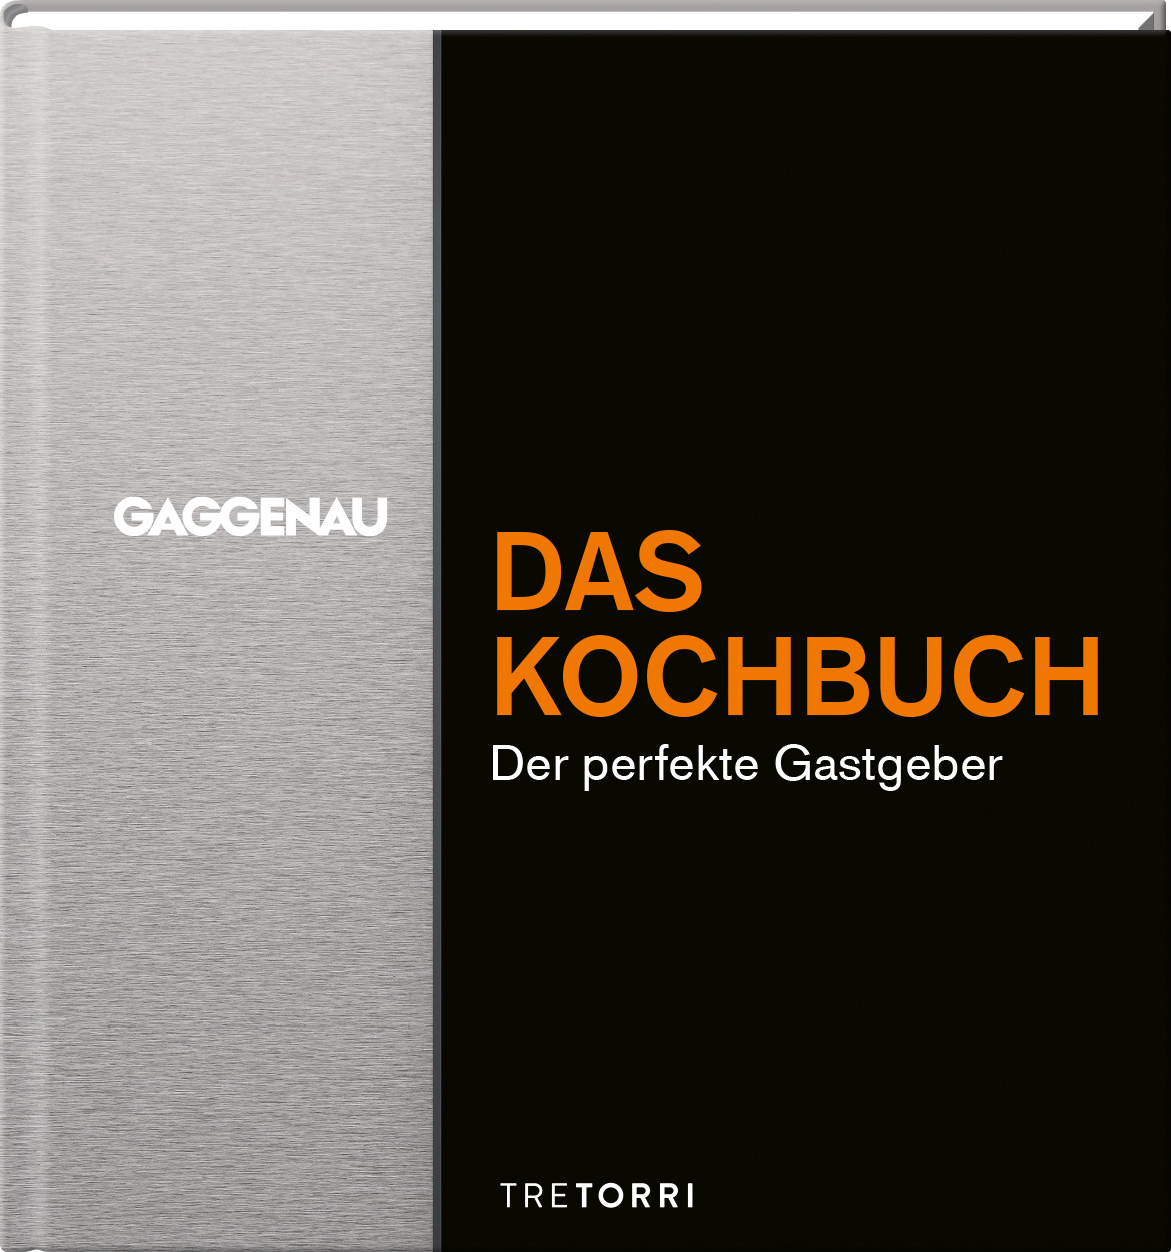 GAGGENAU - Das Kochbuch